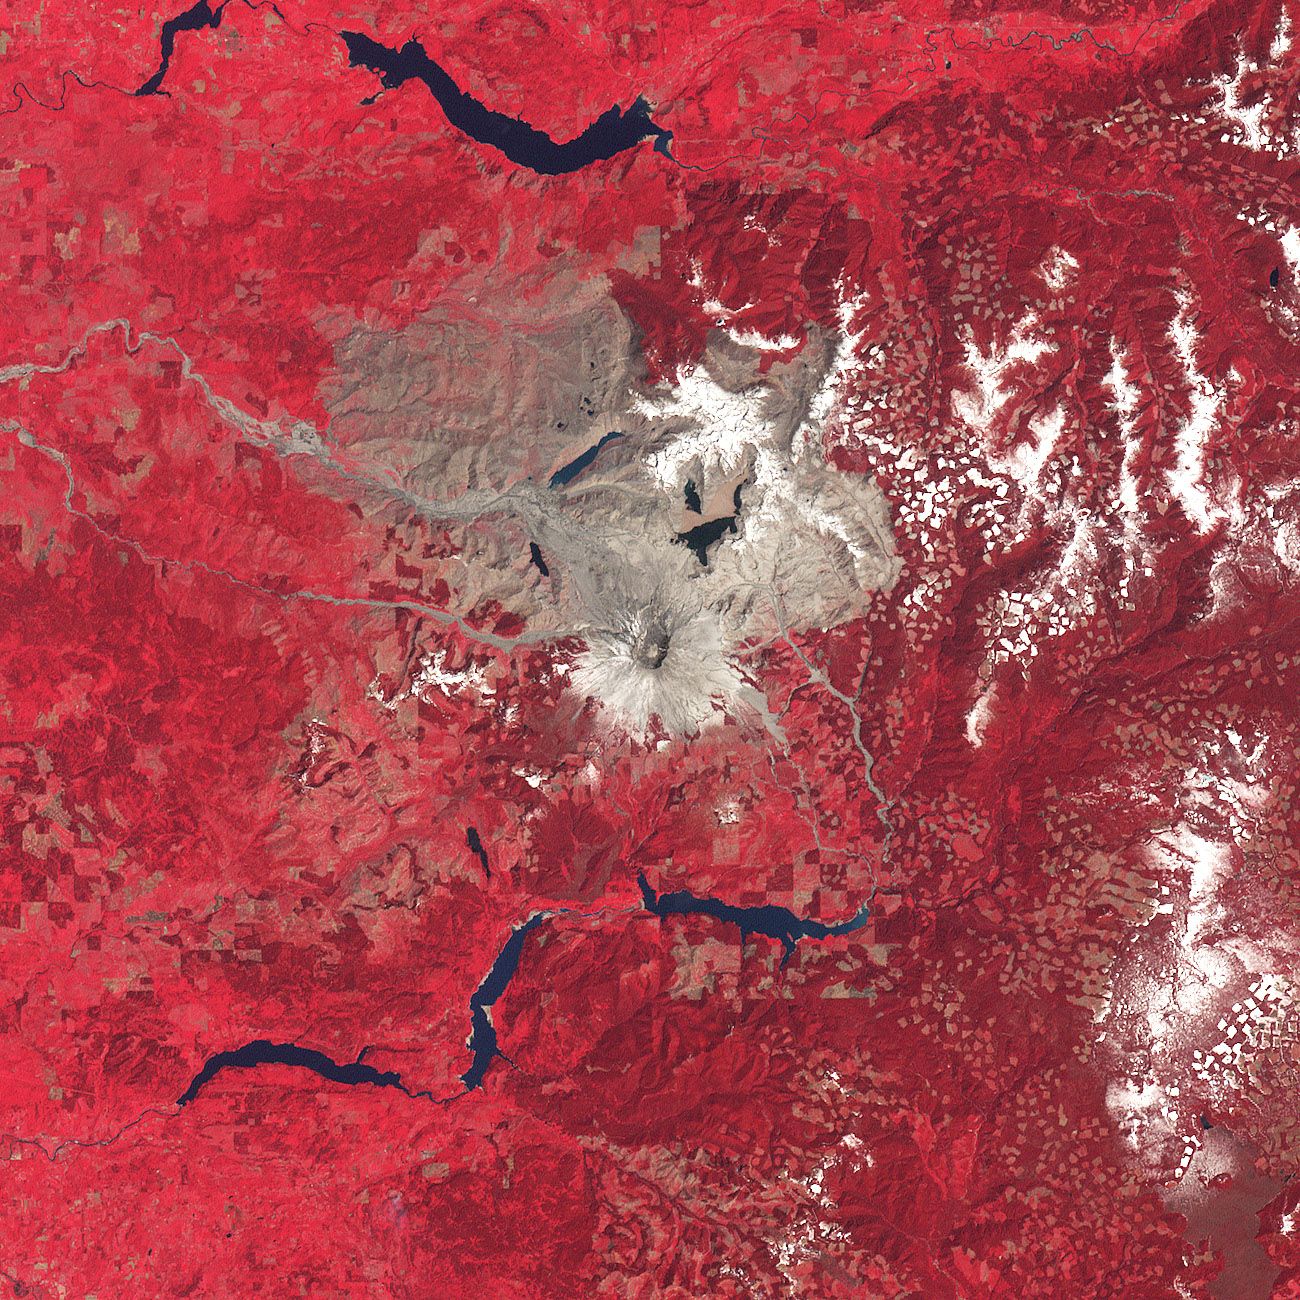 Auf rotem Untergrund ist in grau-braun der Krater des Mount St. Helen zu erkennen.